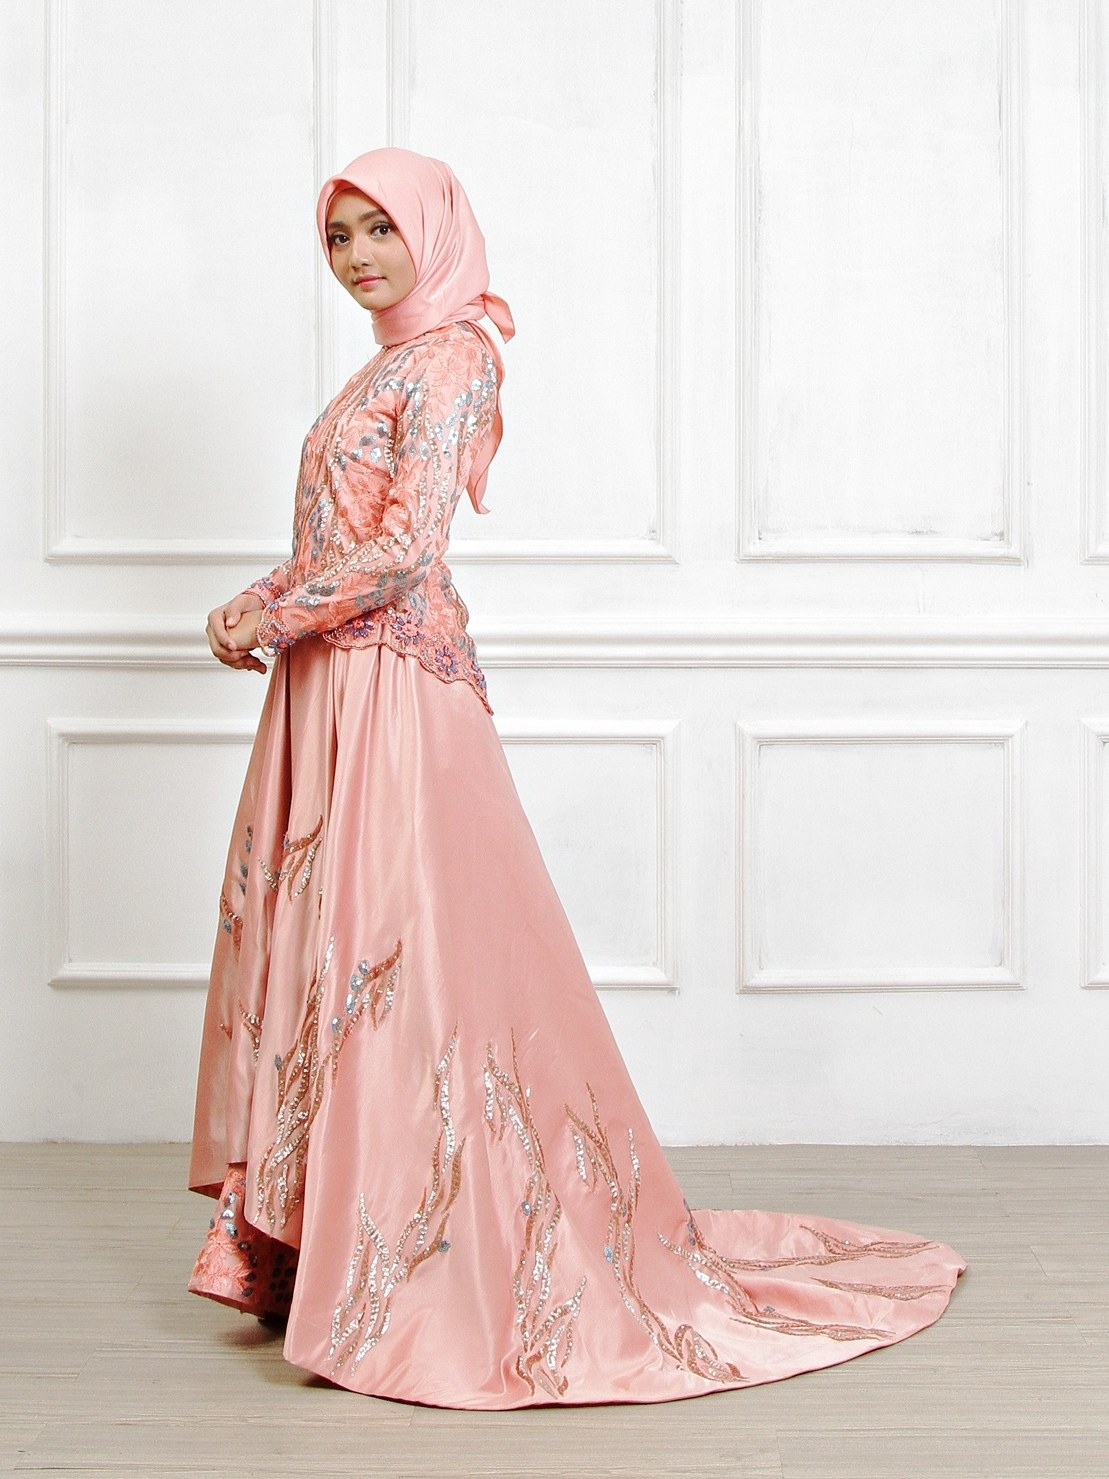 Bentuk Sewa Baju Pengantin Muslimah Drdp Sewa Perdana Baju Pengantin Muslimah Jogja Gaun Pengantin